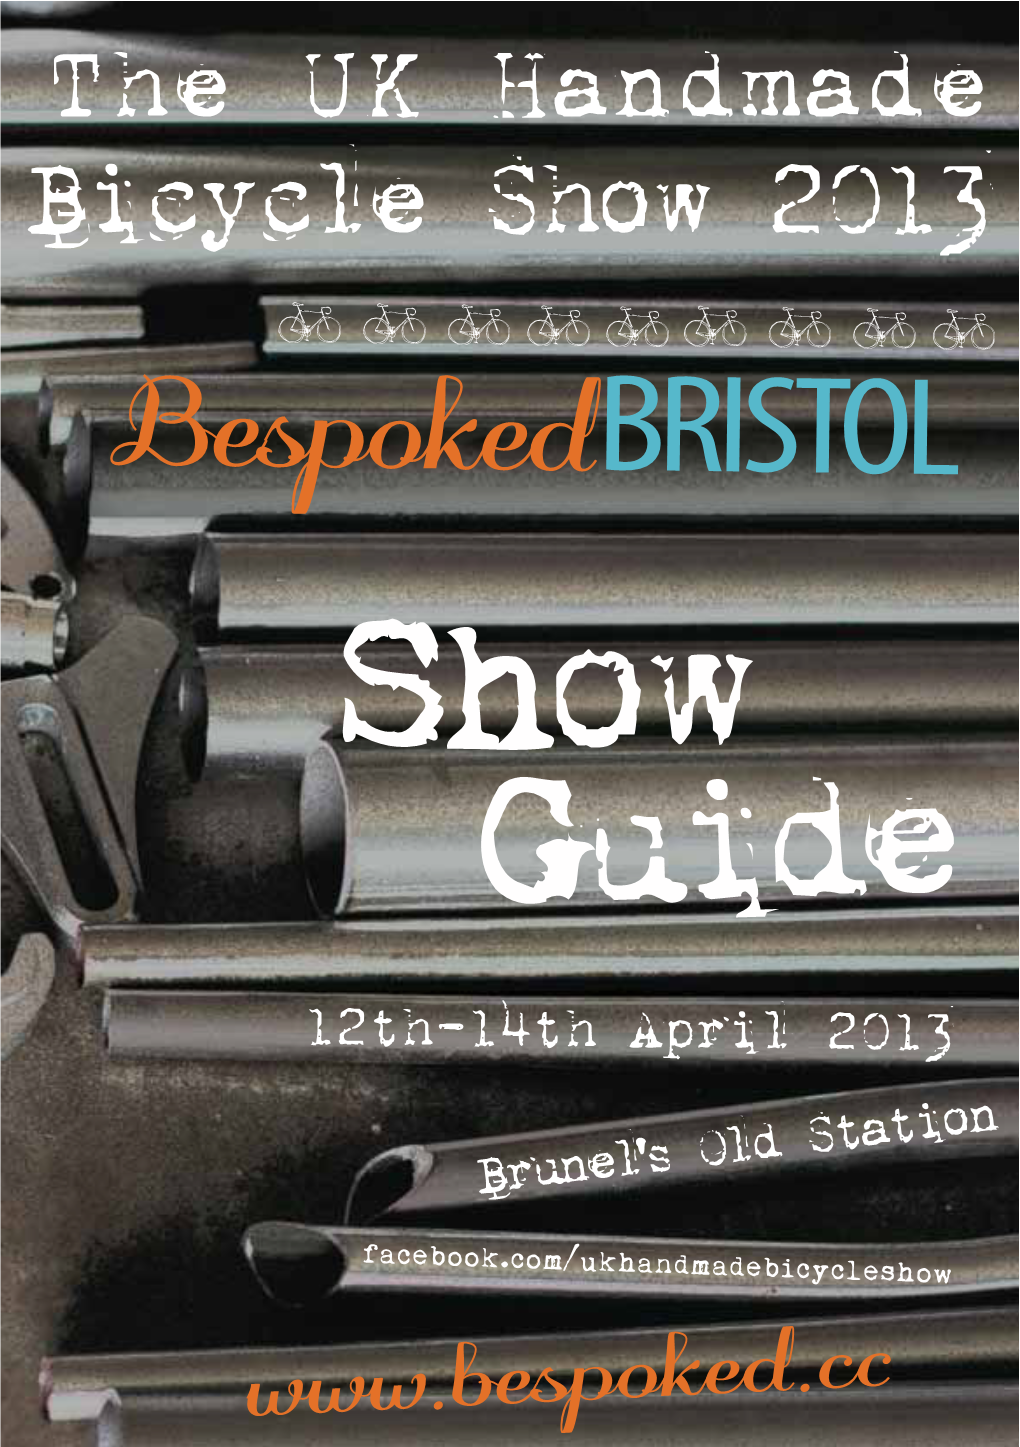 Espoke"BRISTOL Show Guide 12Th-14Th April 2013